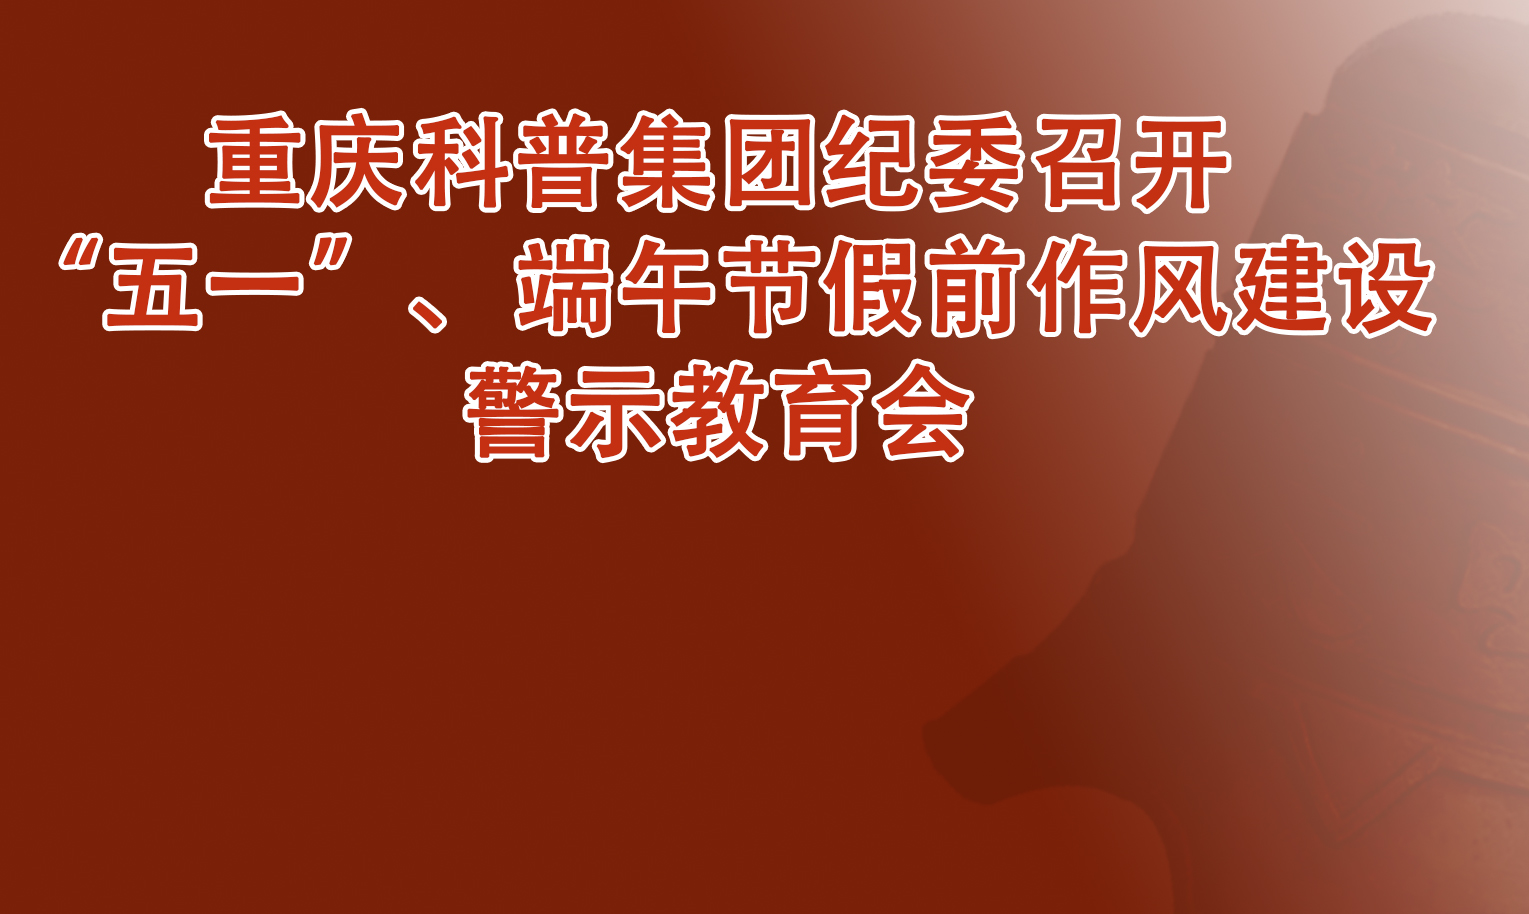 重庆科普集团纪委召开“五一”、端午节假前作风建设警示教育会